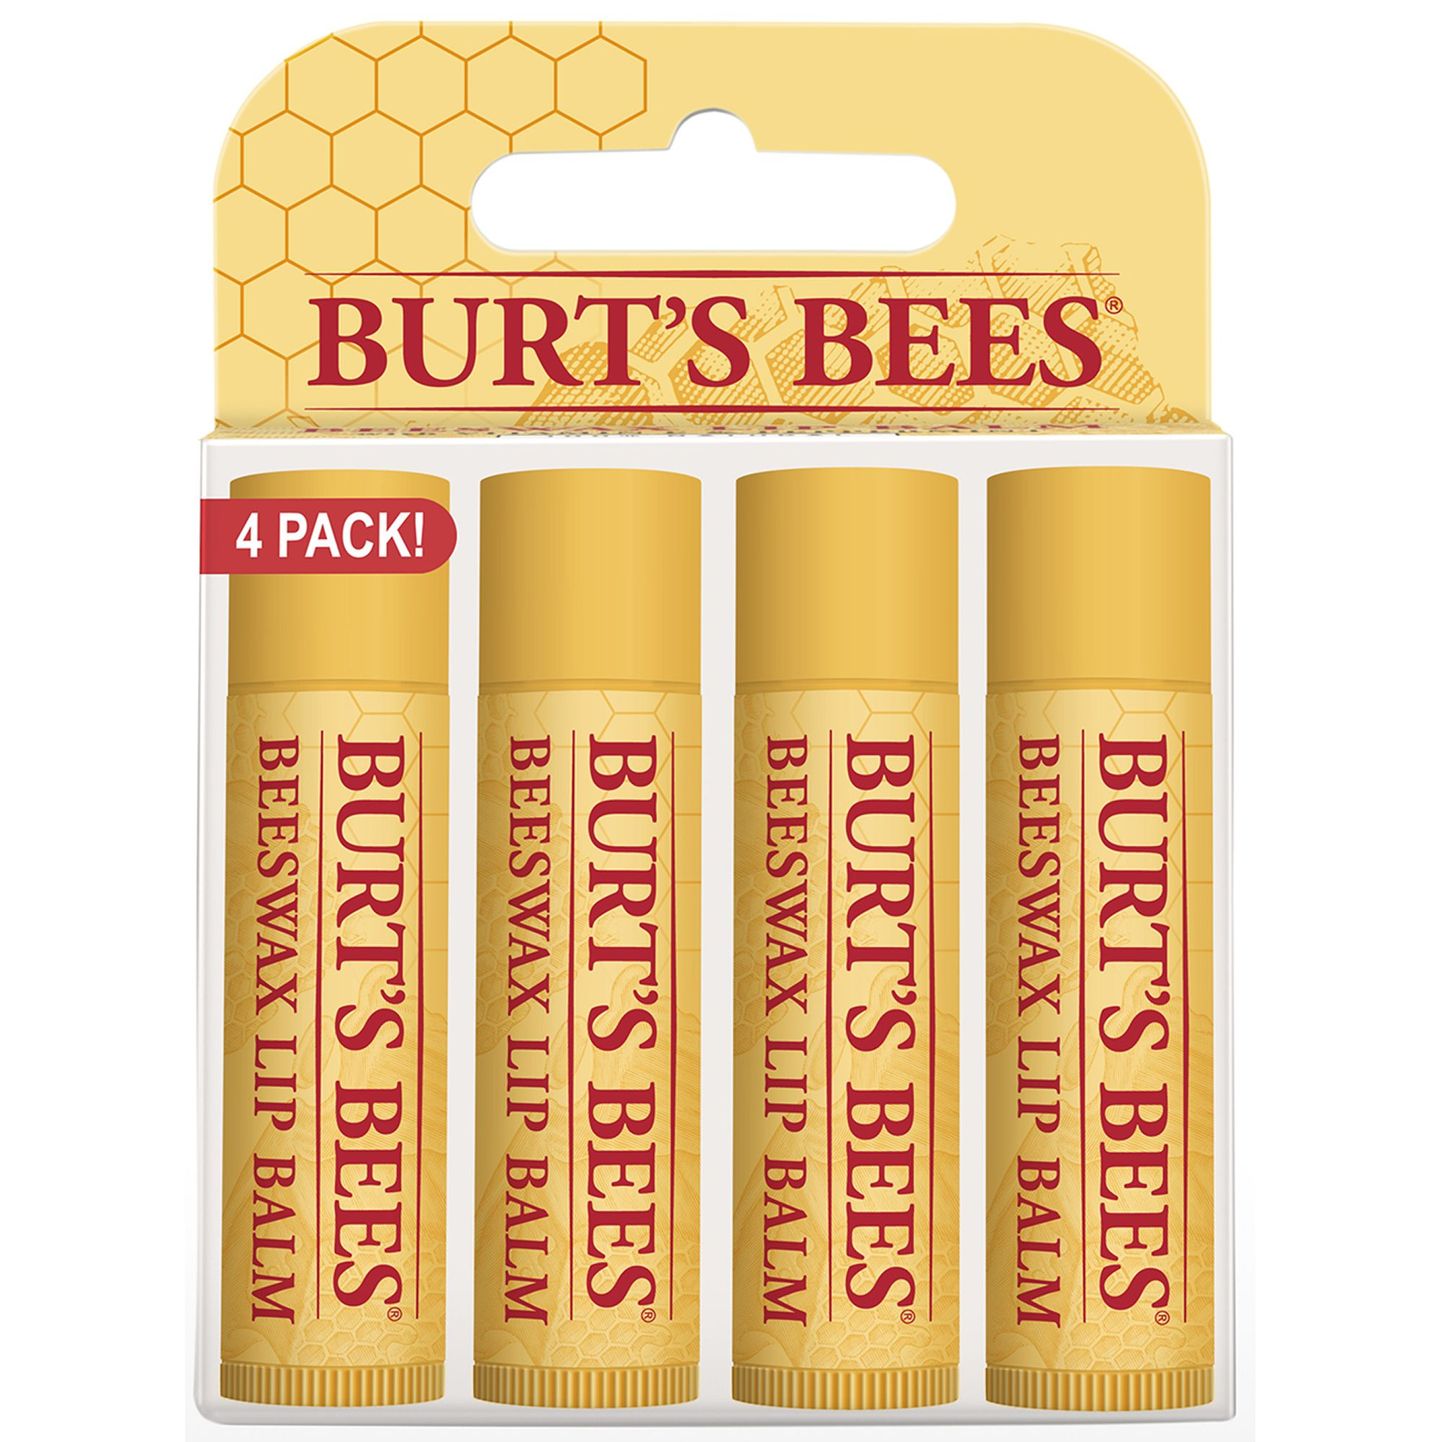 Burt's Bees huulepalsamid.